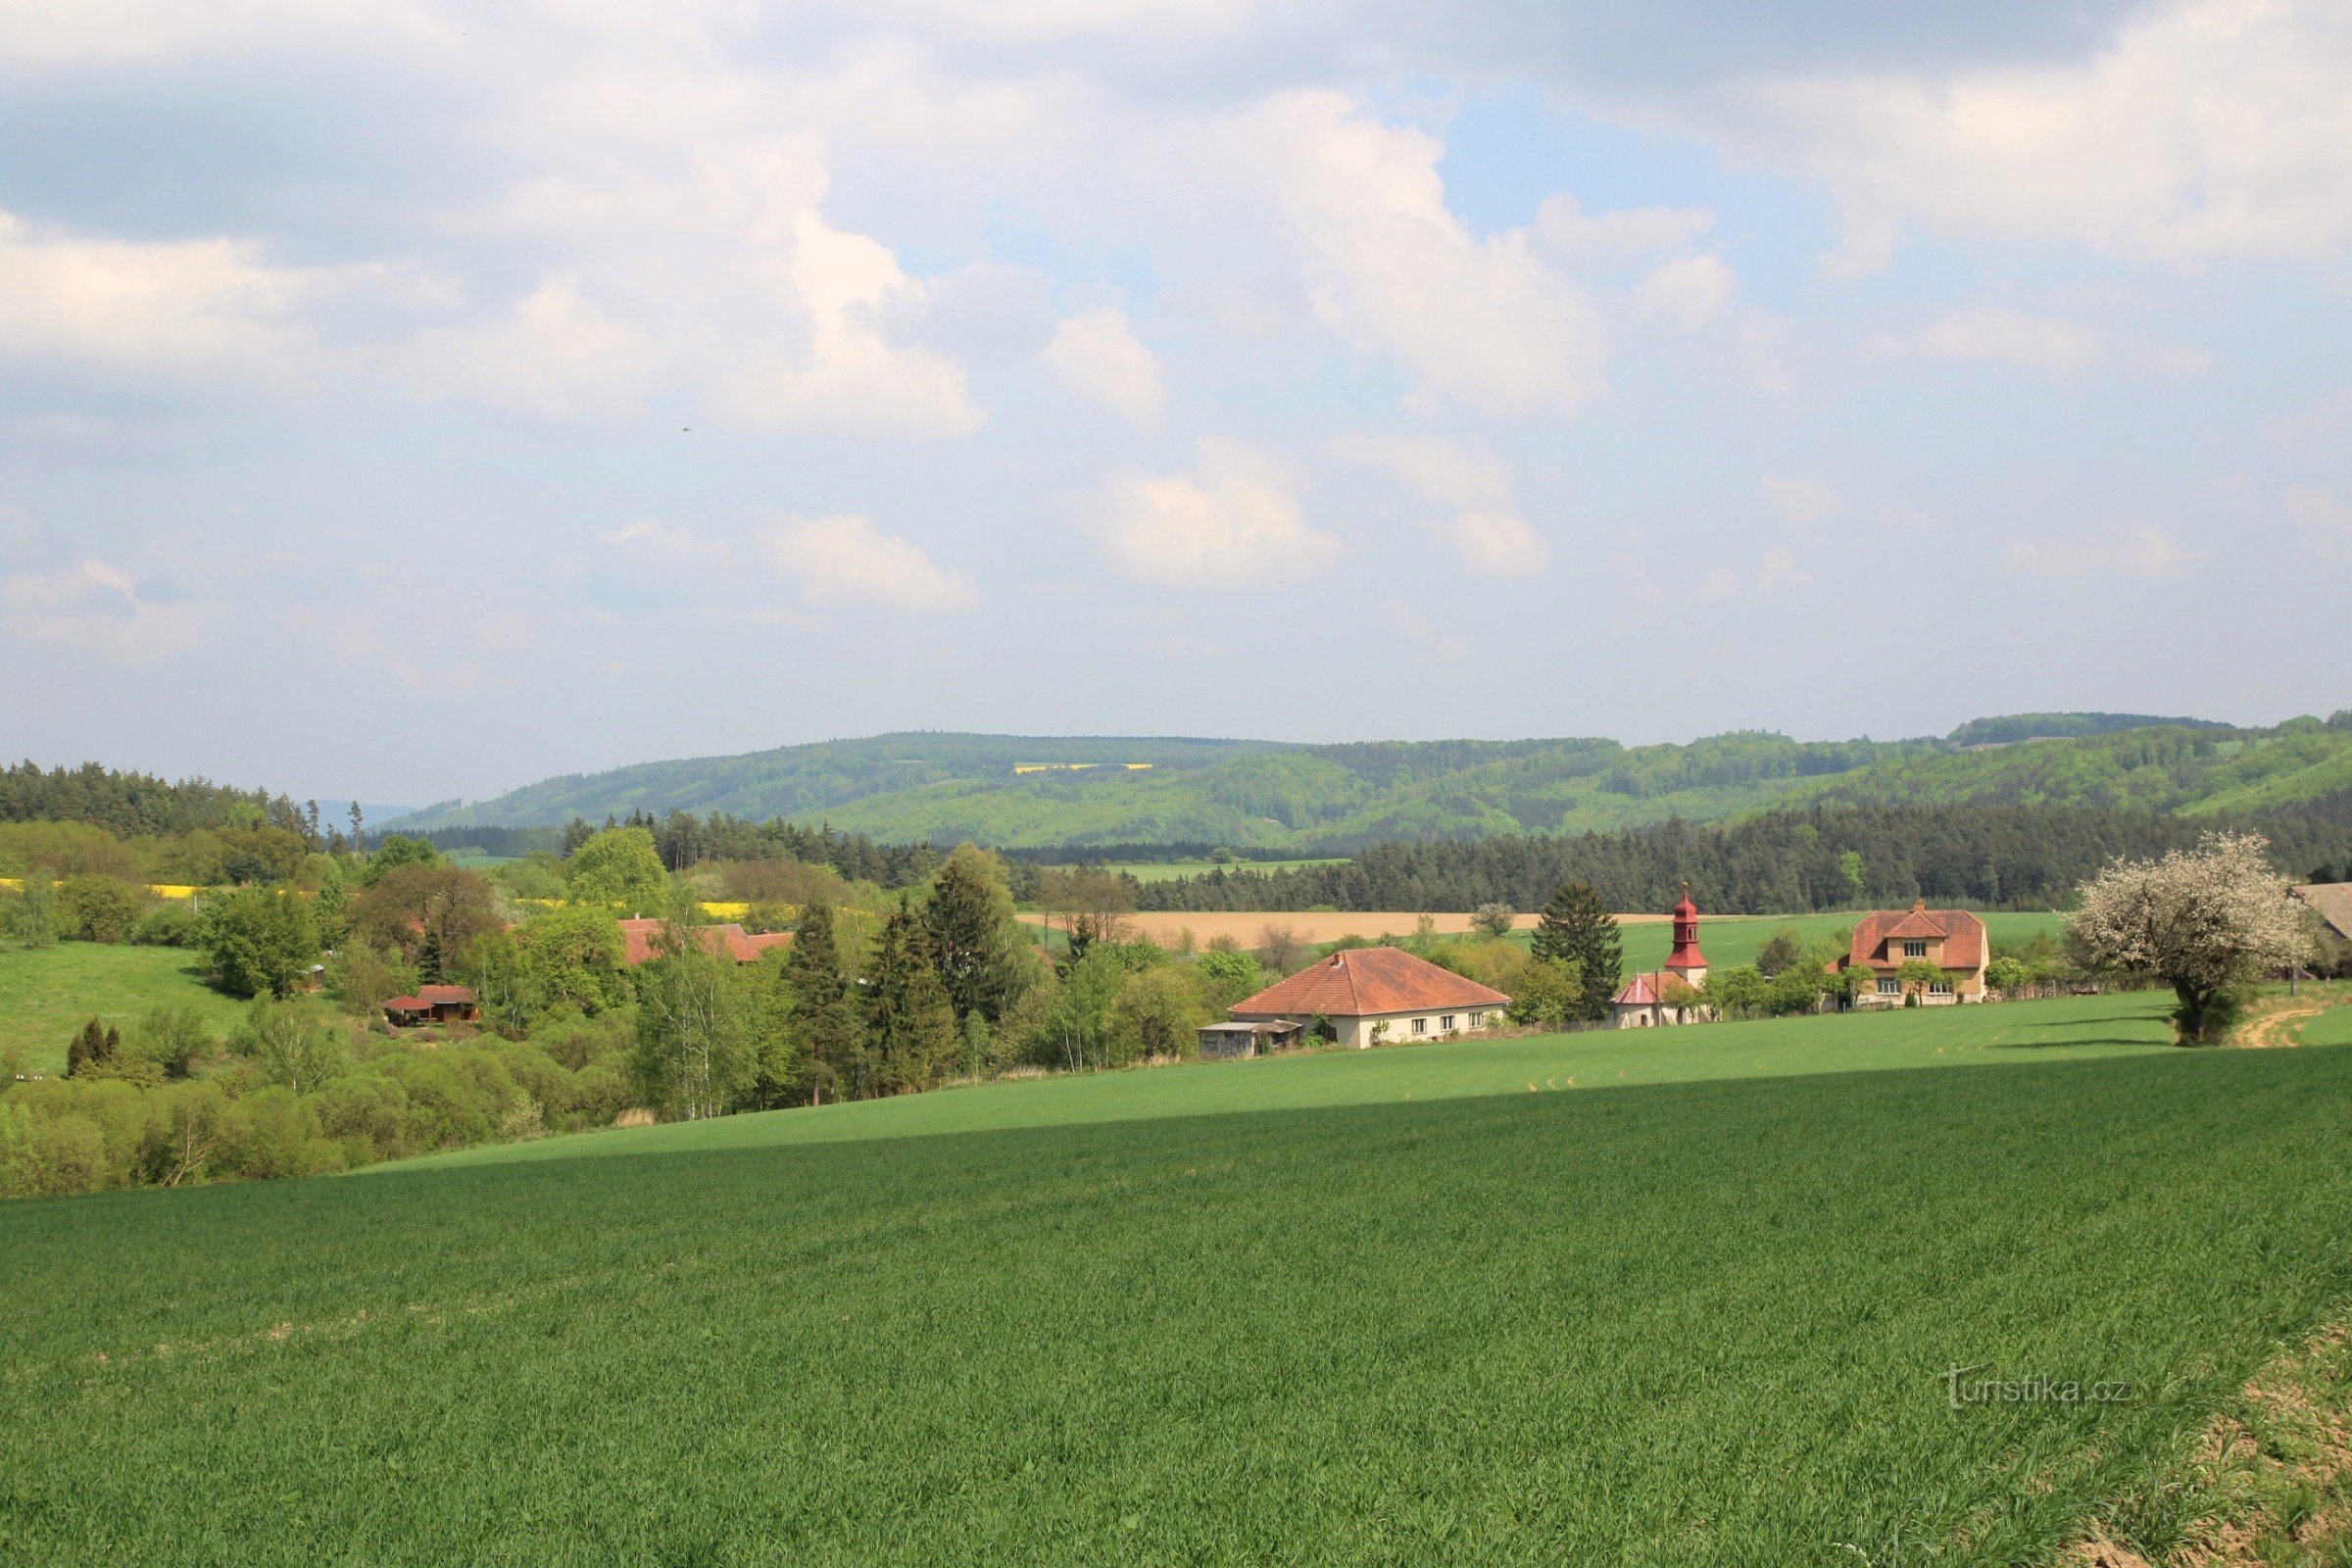 Udsigt over Prosatín til Blahoňůvka-dalen